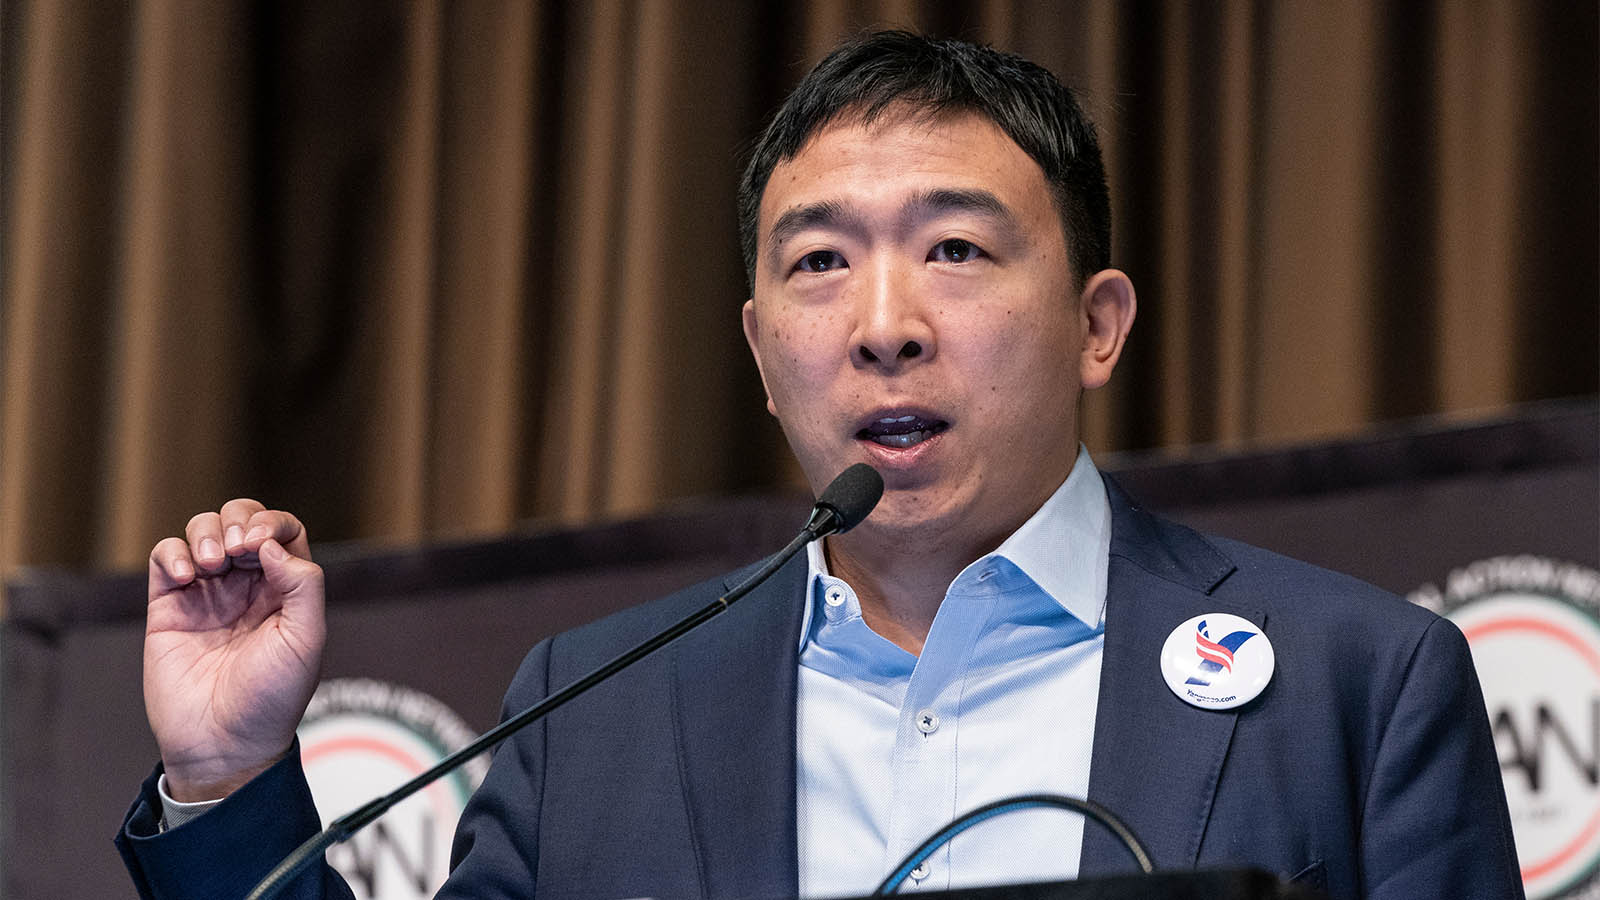 המתמודד להנהגת המפלגה הדמוקרטית, אנדרו יאנג (צילום: lev radin / Shutterstock.com)